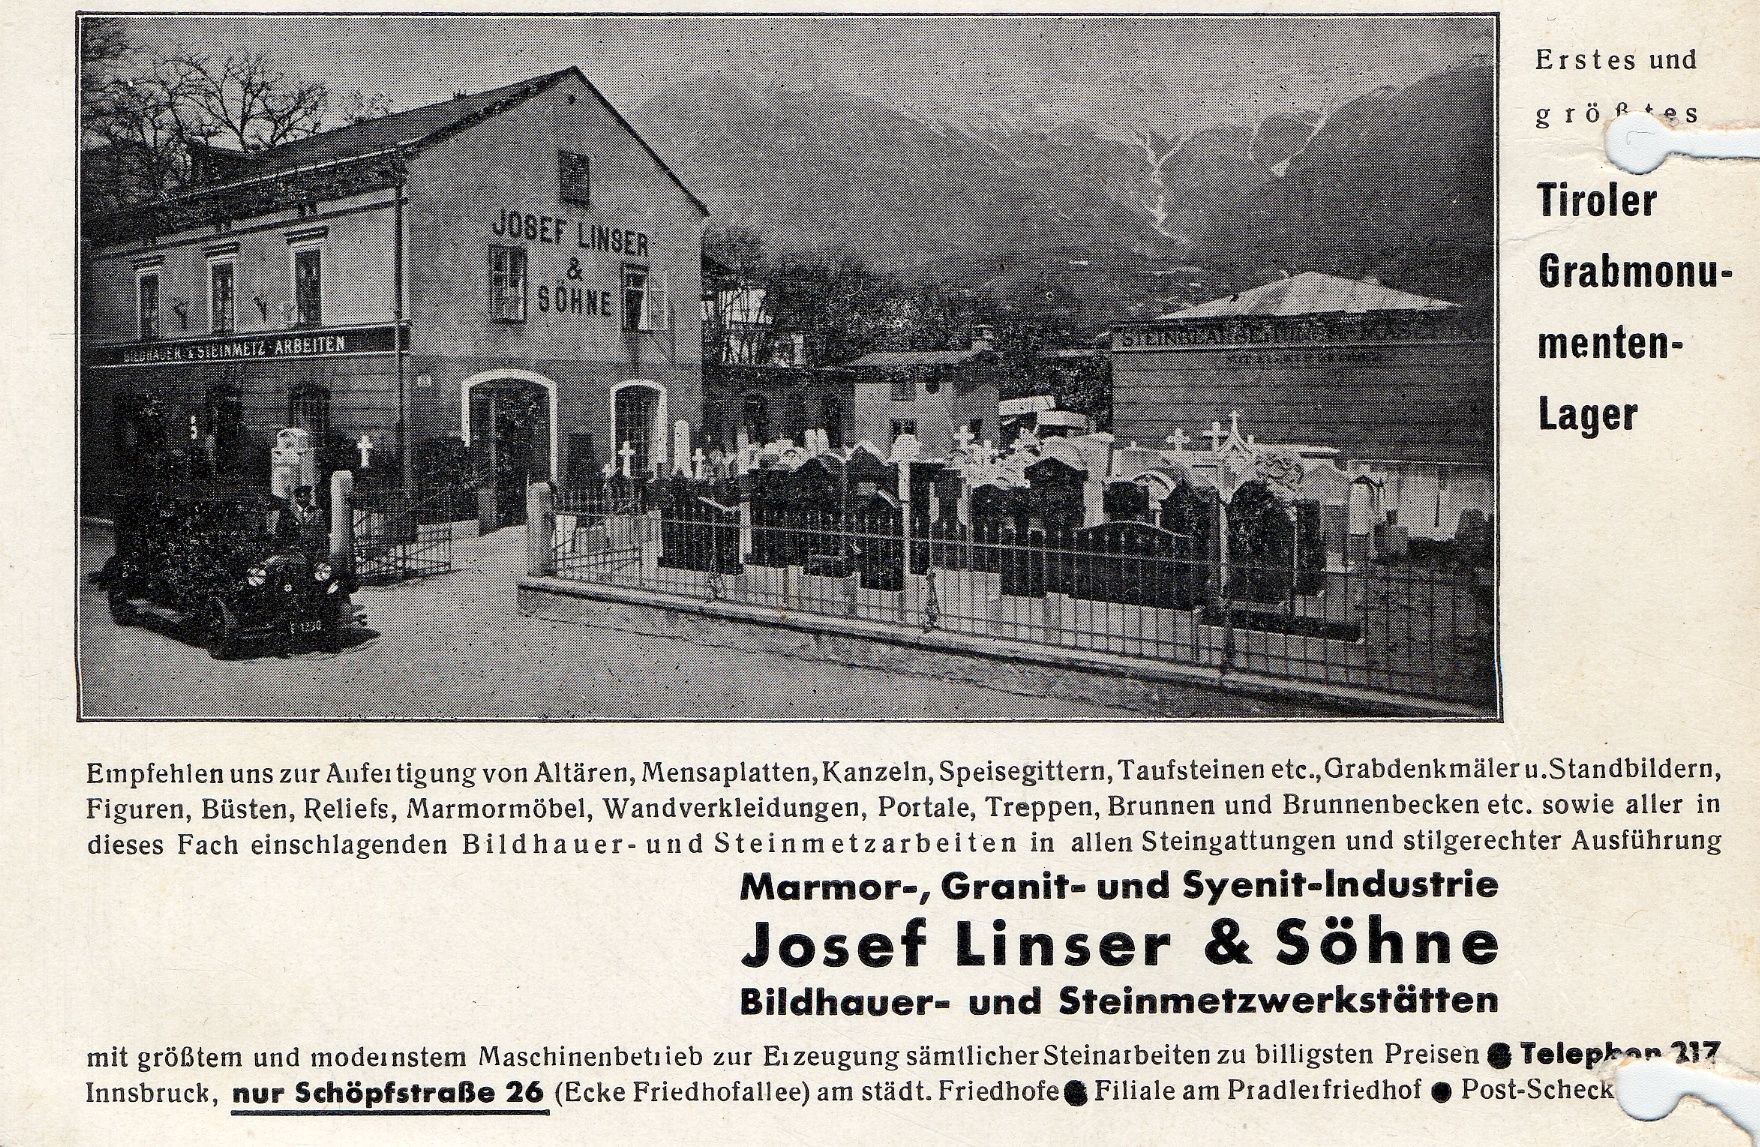 Die Firma Josef Linser & Söhne